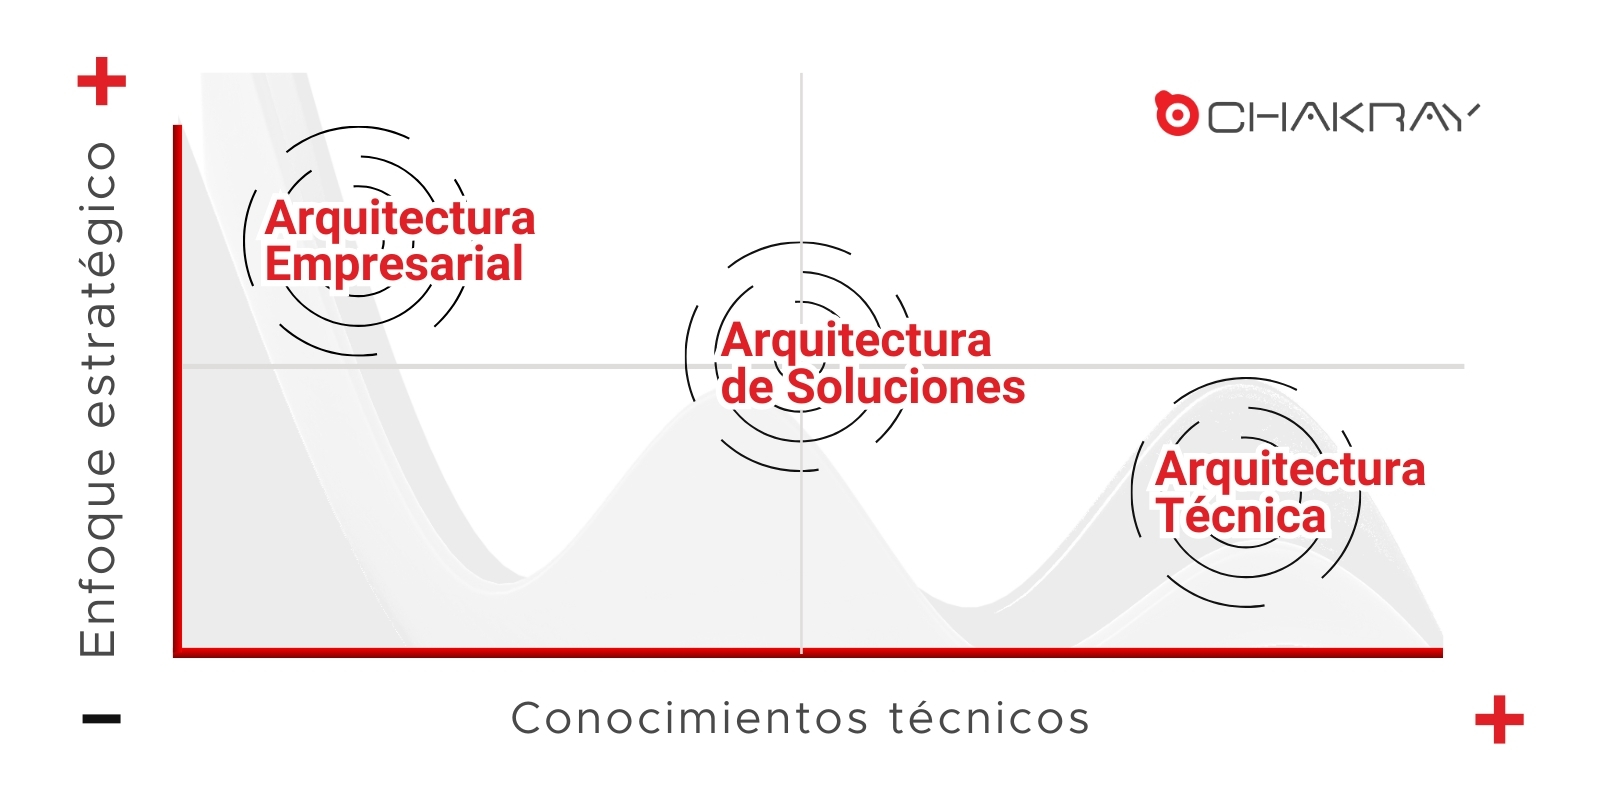 La jerarquía entre la Arquitectura Empresarial, vs de Soluciones y Técnica